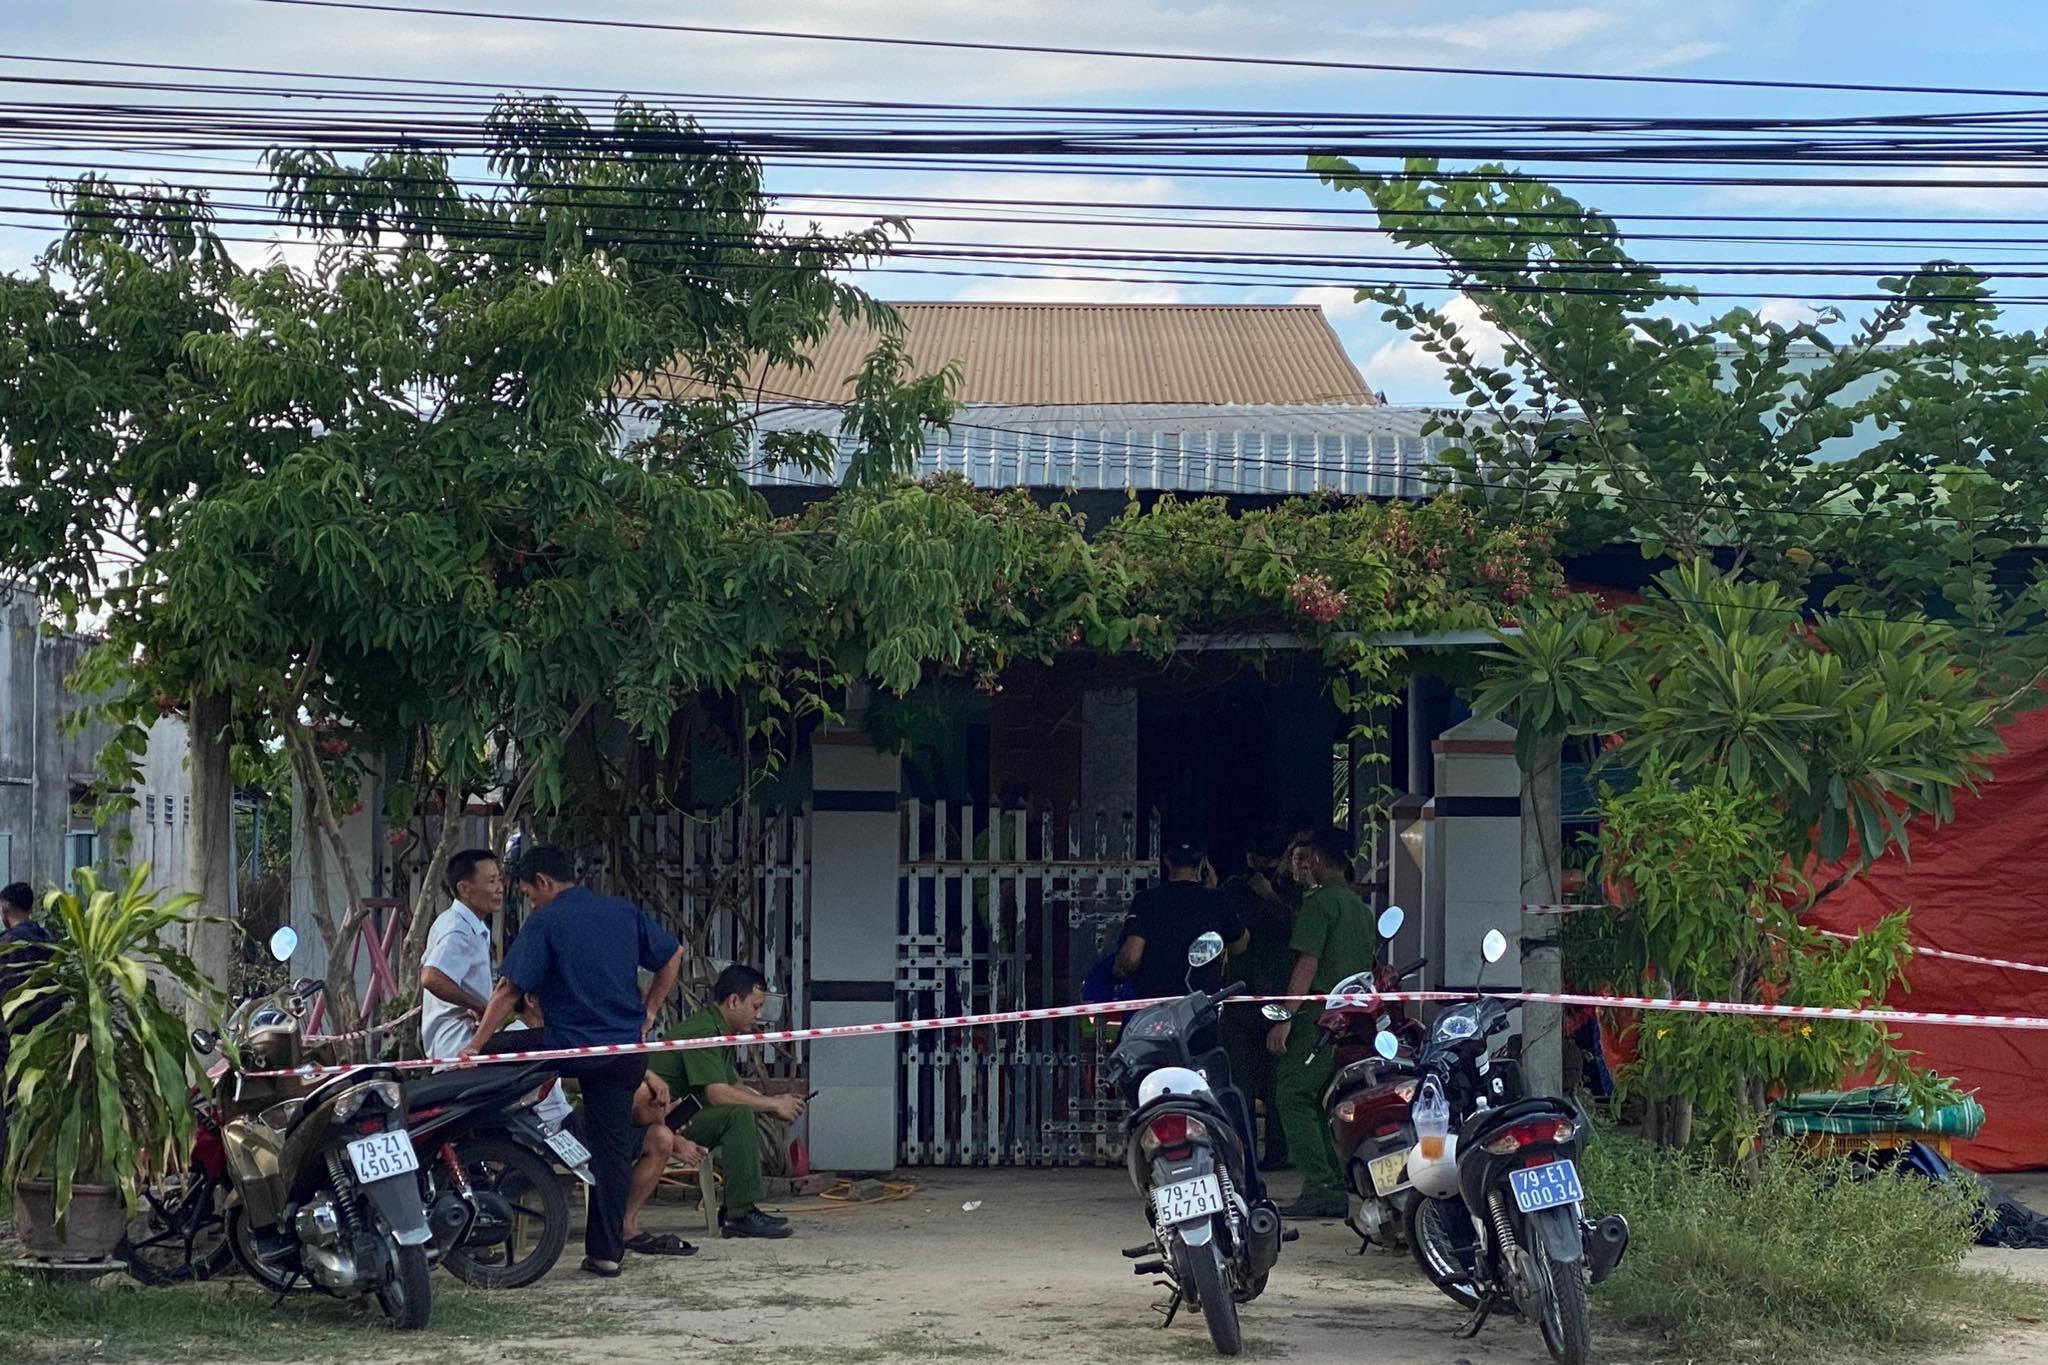 Bản tin chiều 23/8: 4 mẹ con tử vong, người chồng nằm gục trong nhà ở Khánh Hòa